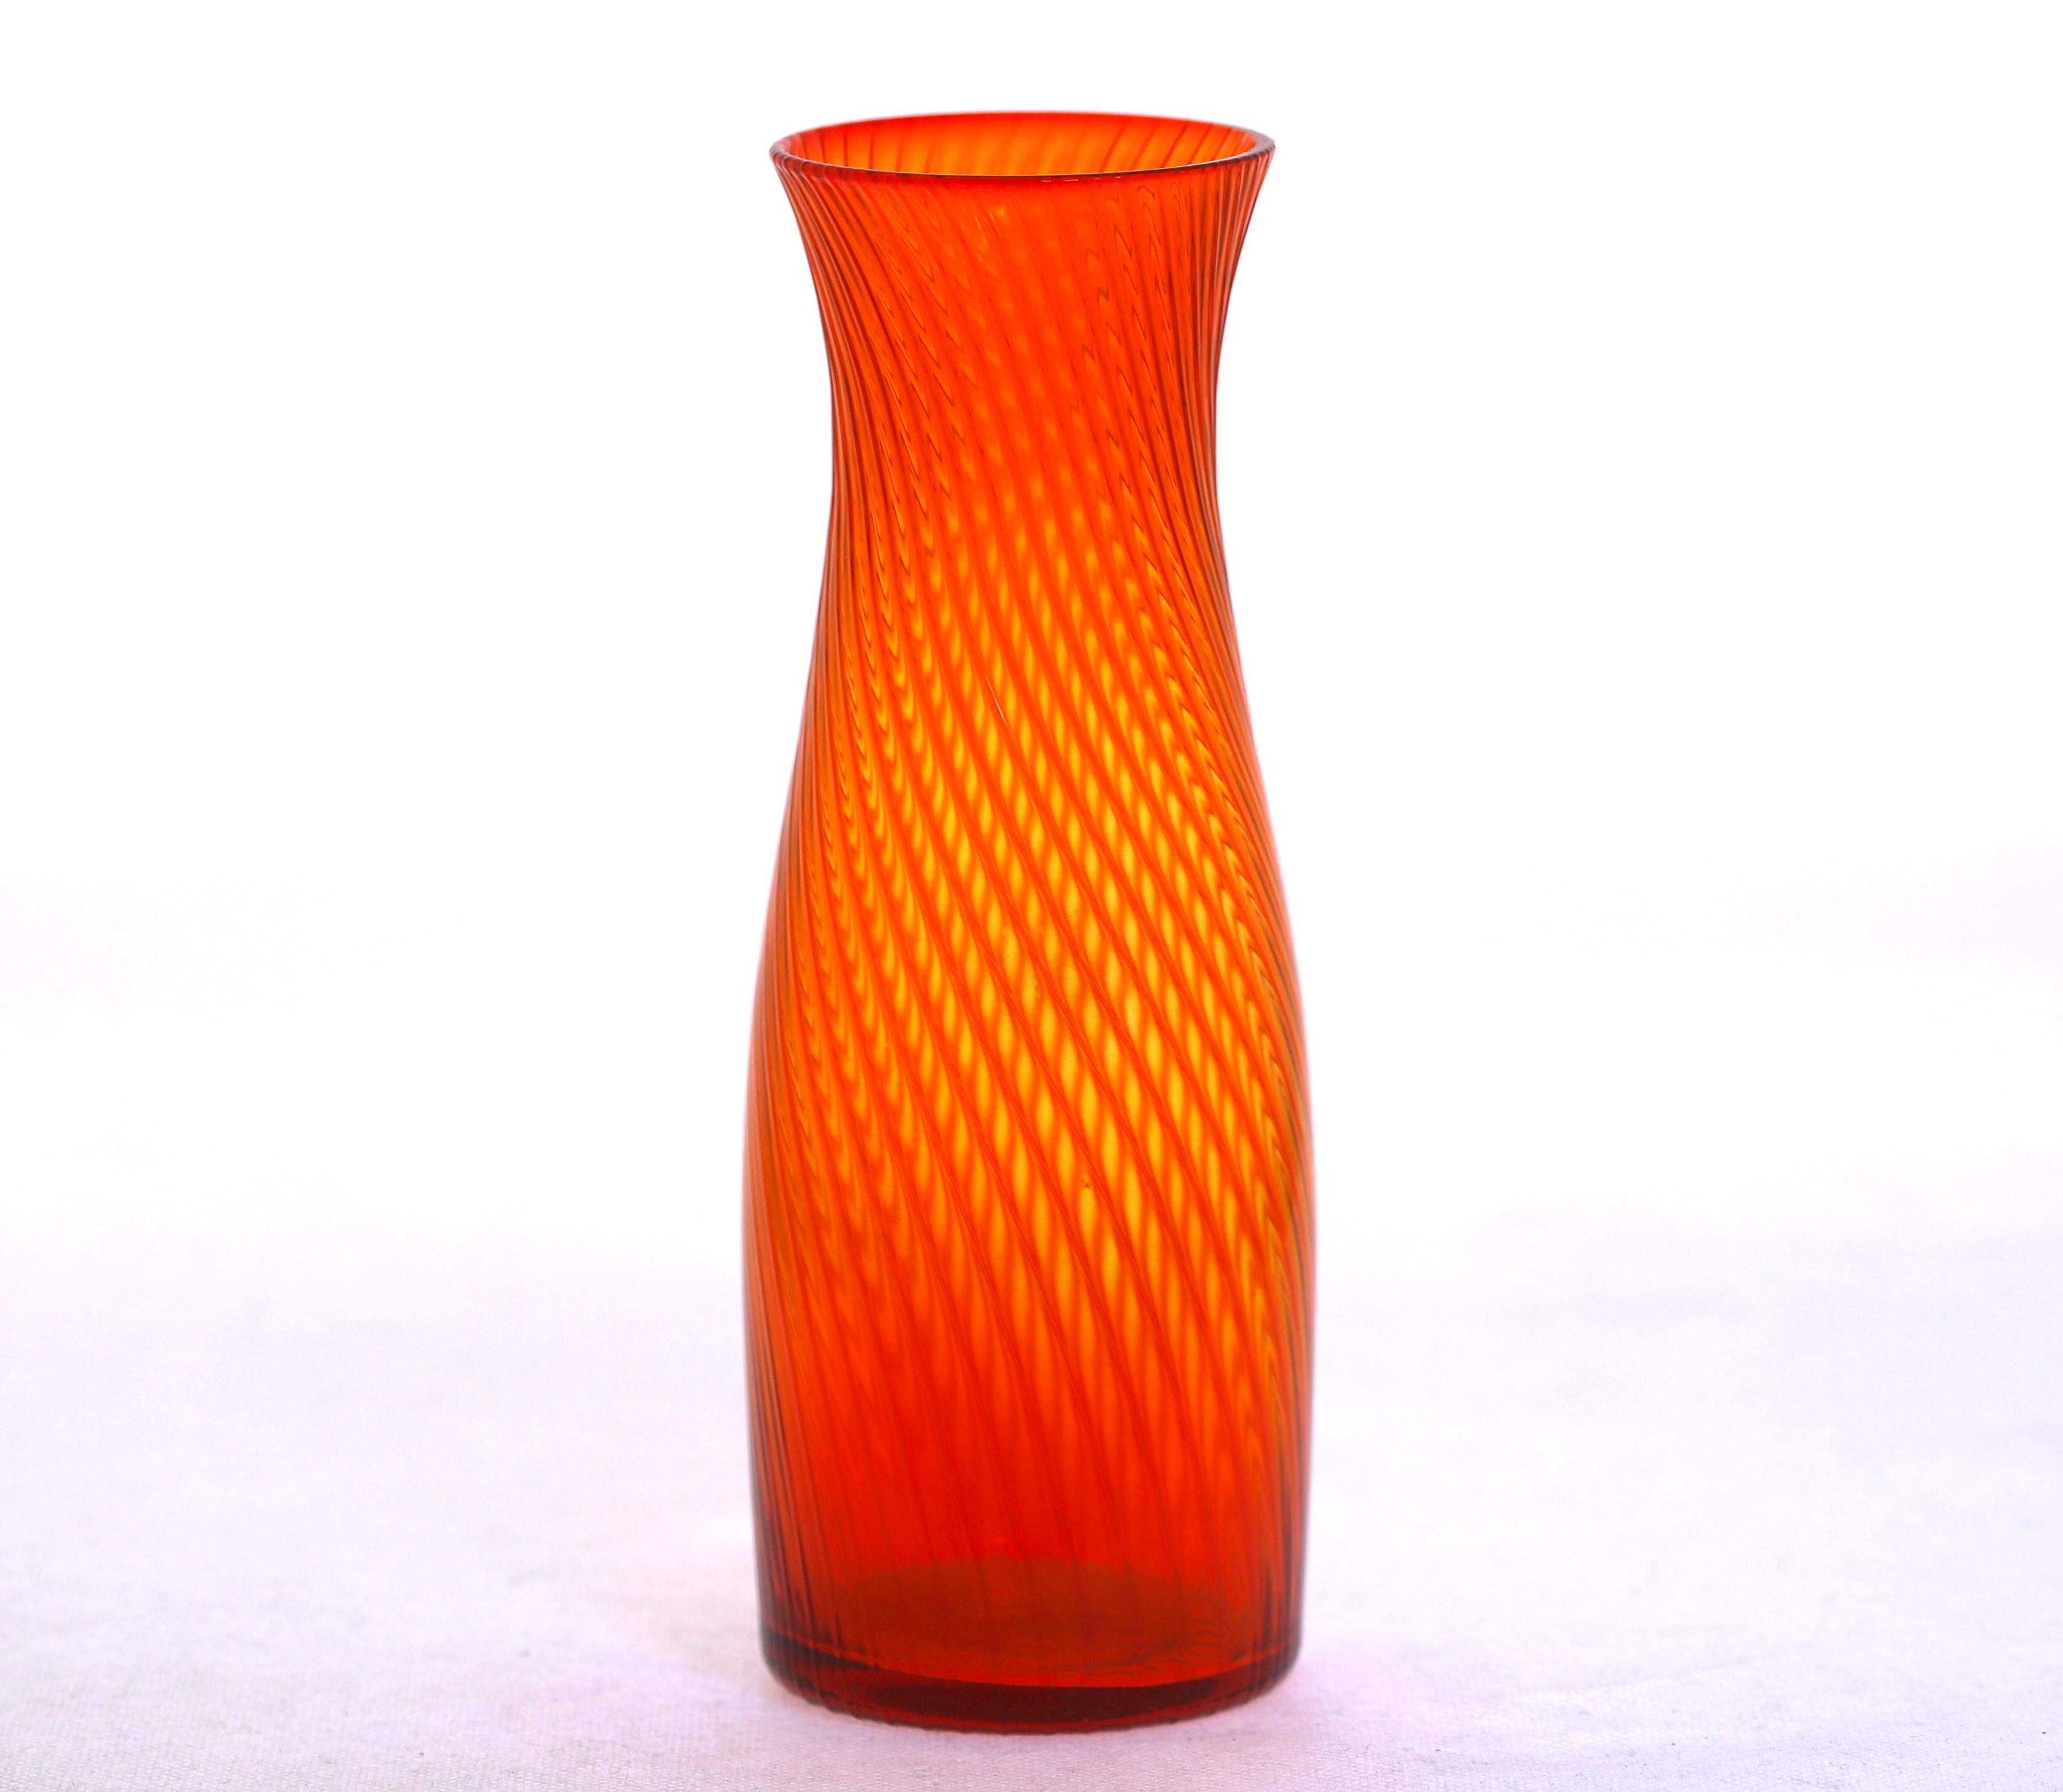 Karafka wazon butelka szklana czerwono pomarańczowa wys 21cm